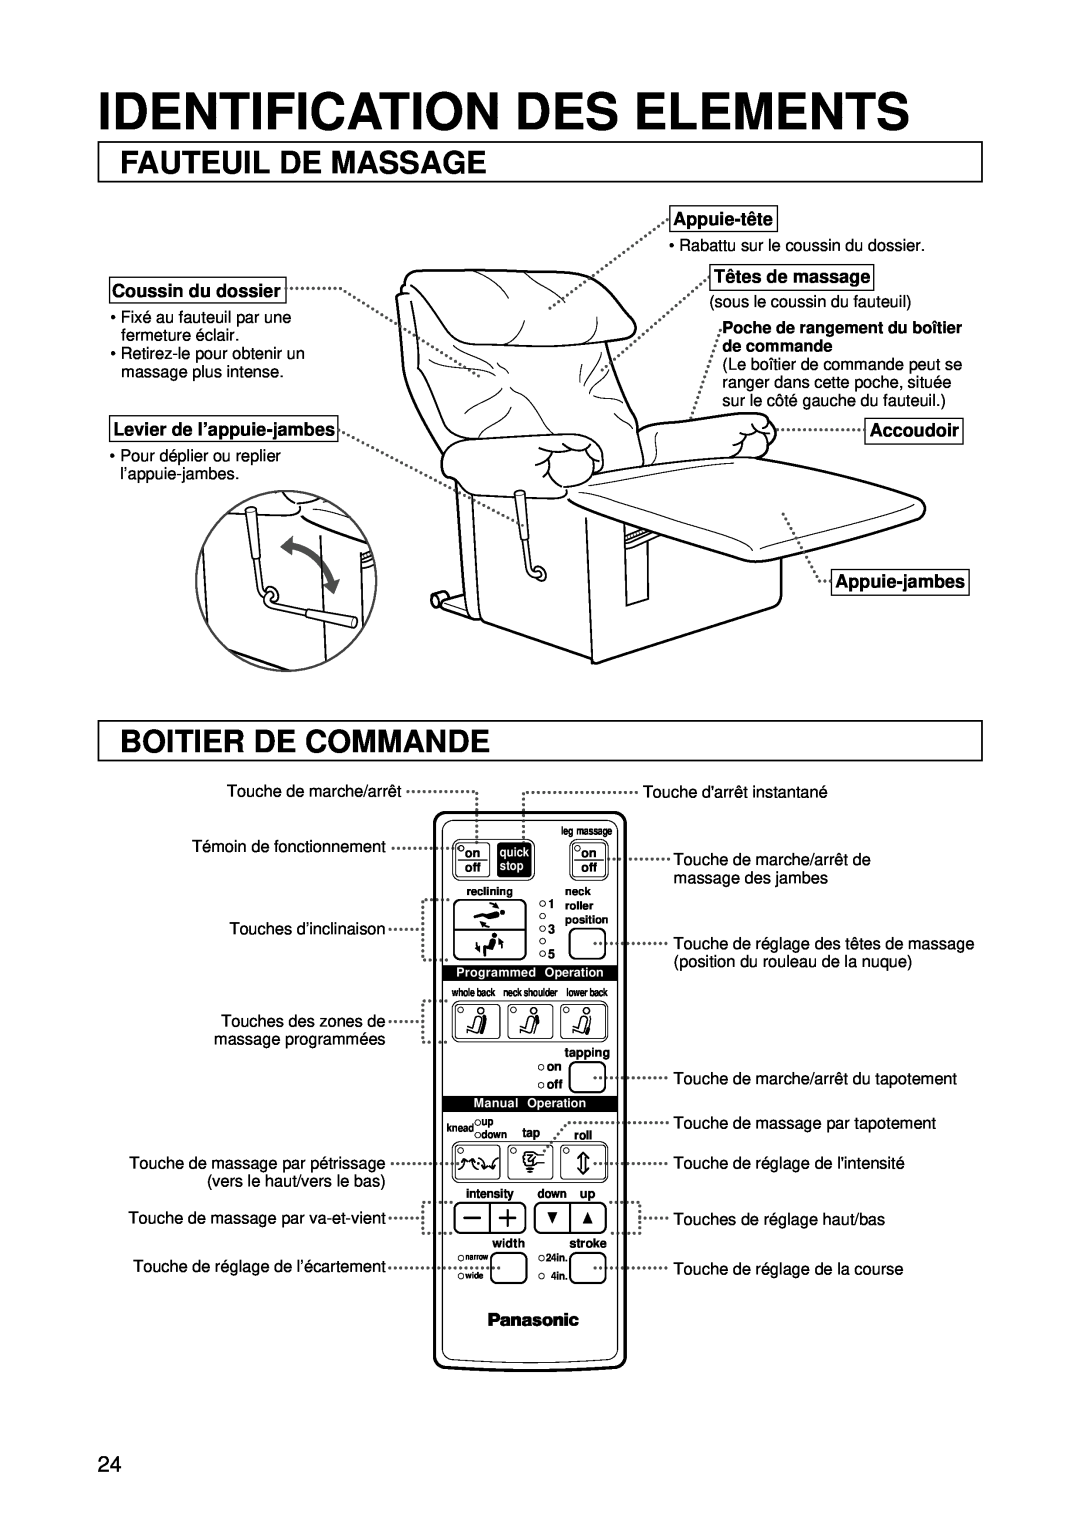 Panasonic EP1015 Identification Des Elements, Fauteuil De Massage, Boitier De Commande, Touche de marche/arrêt 